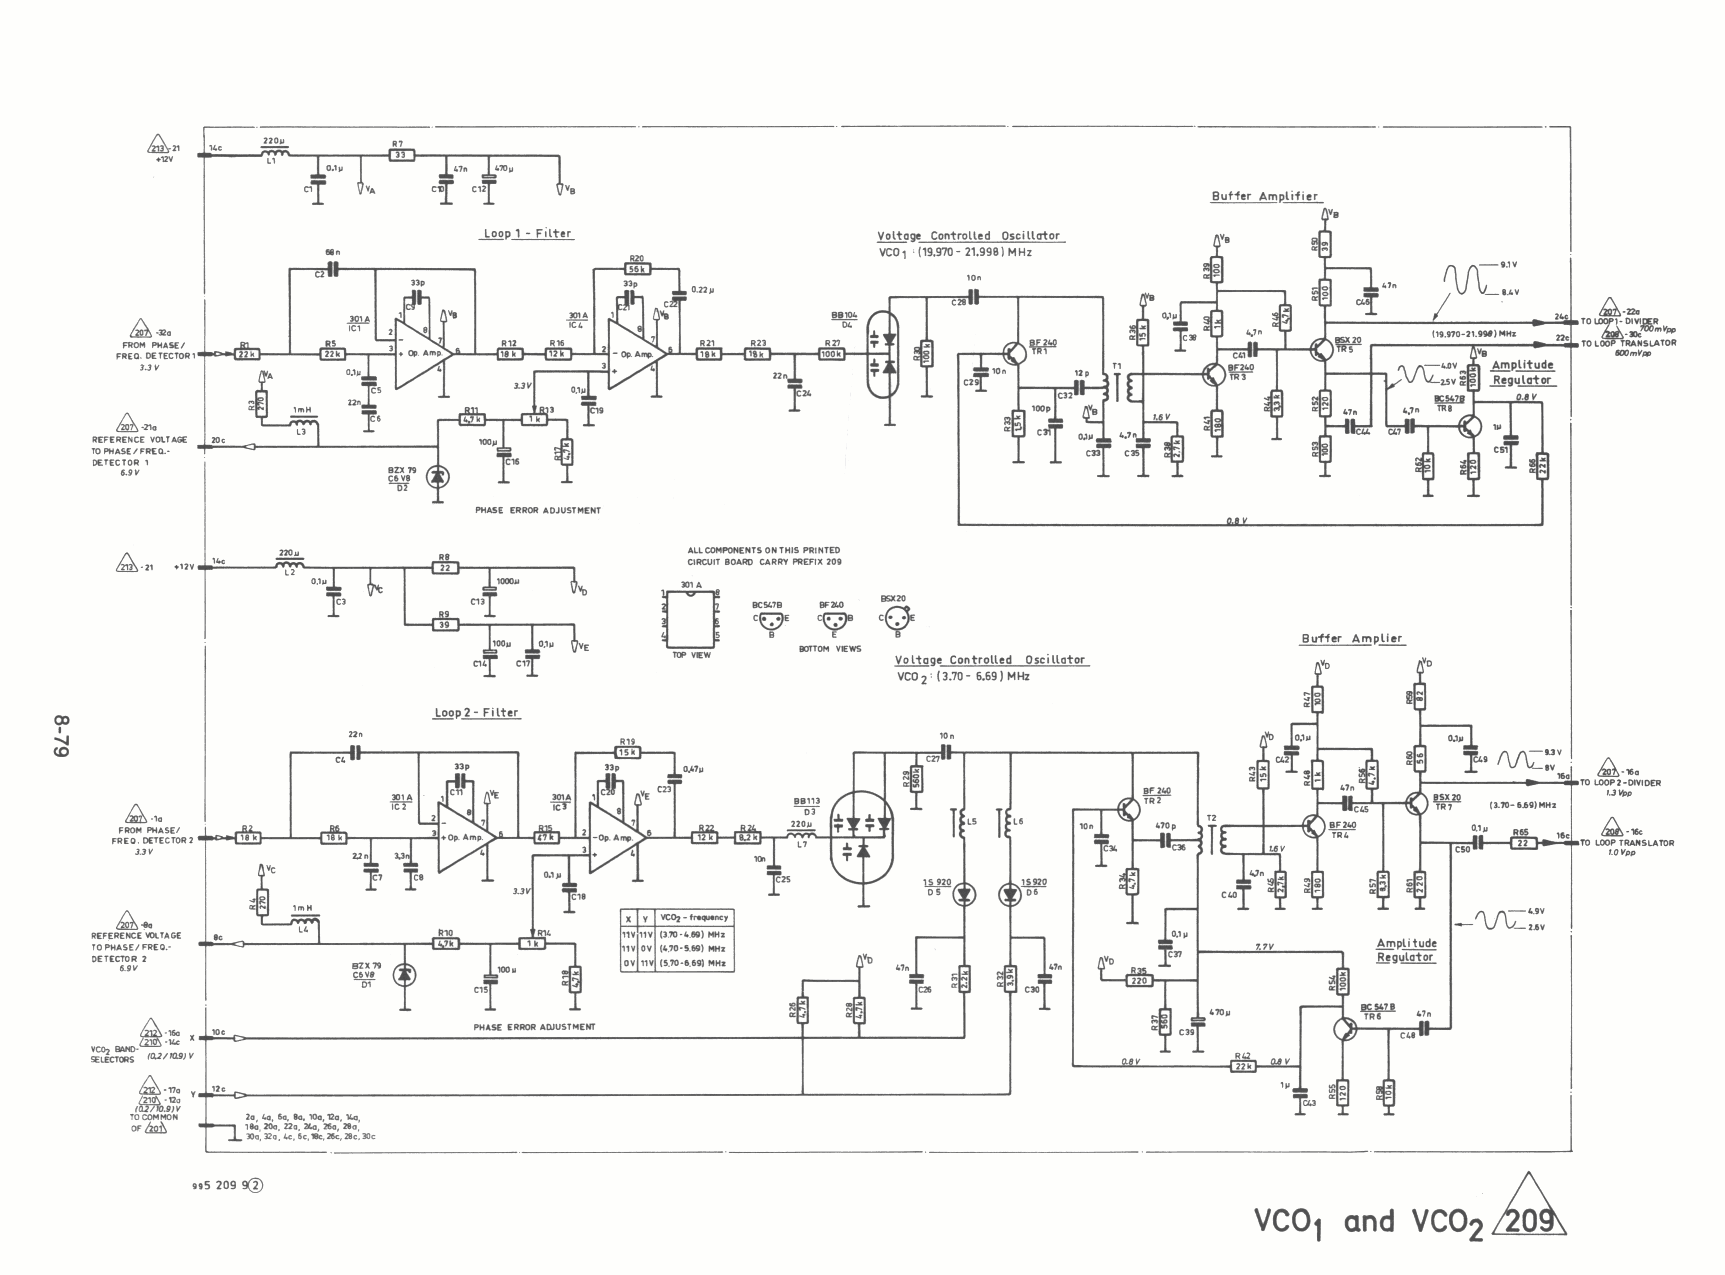 Skanti HF VCO-1_and_VCO-2 diagram 209